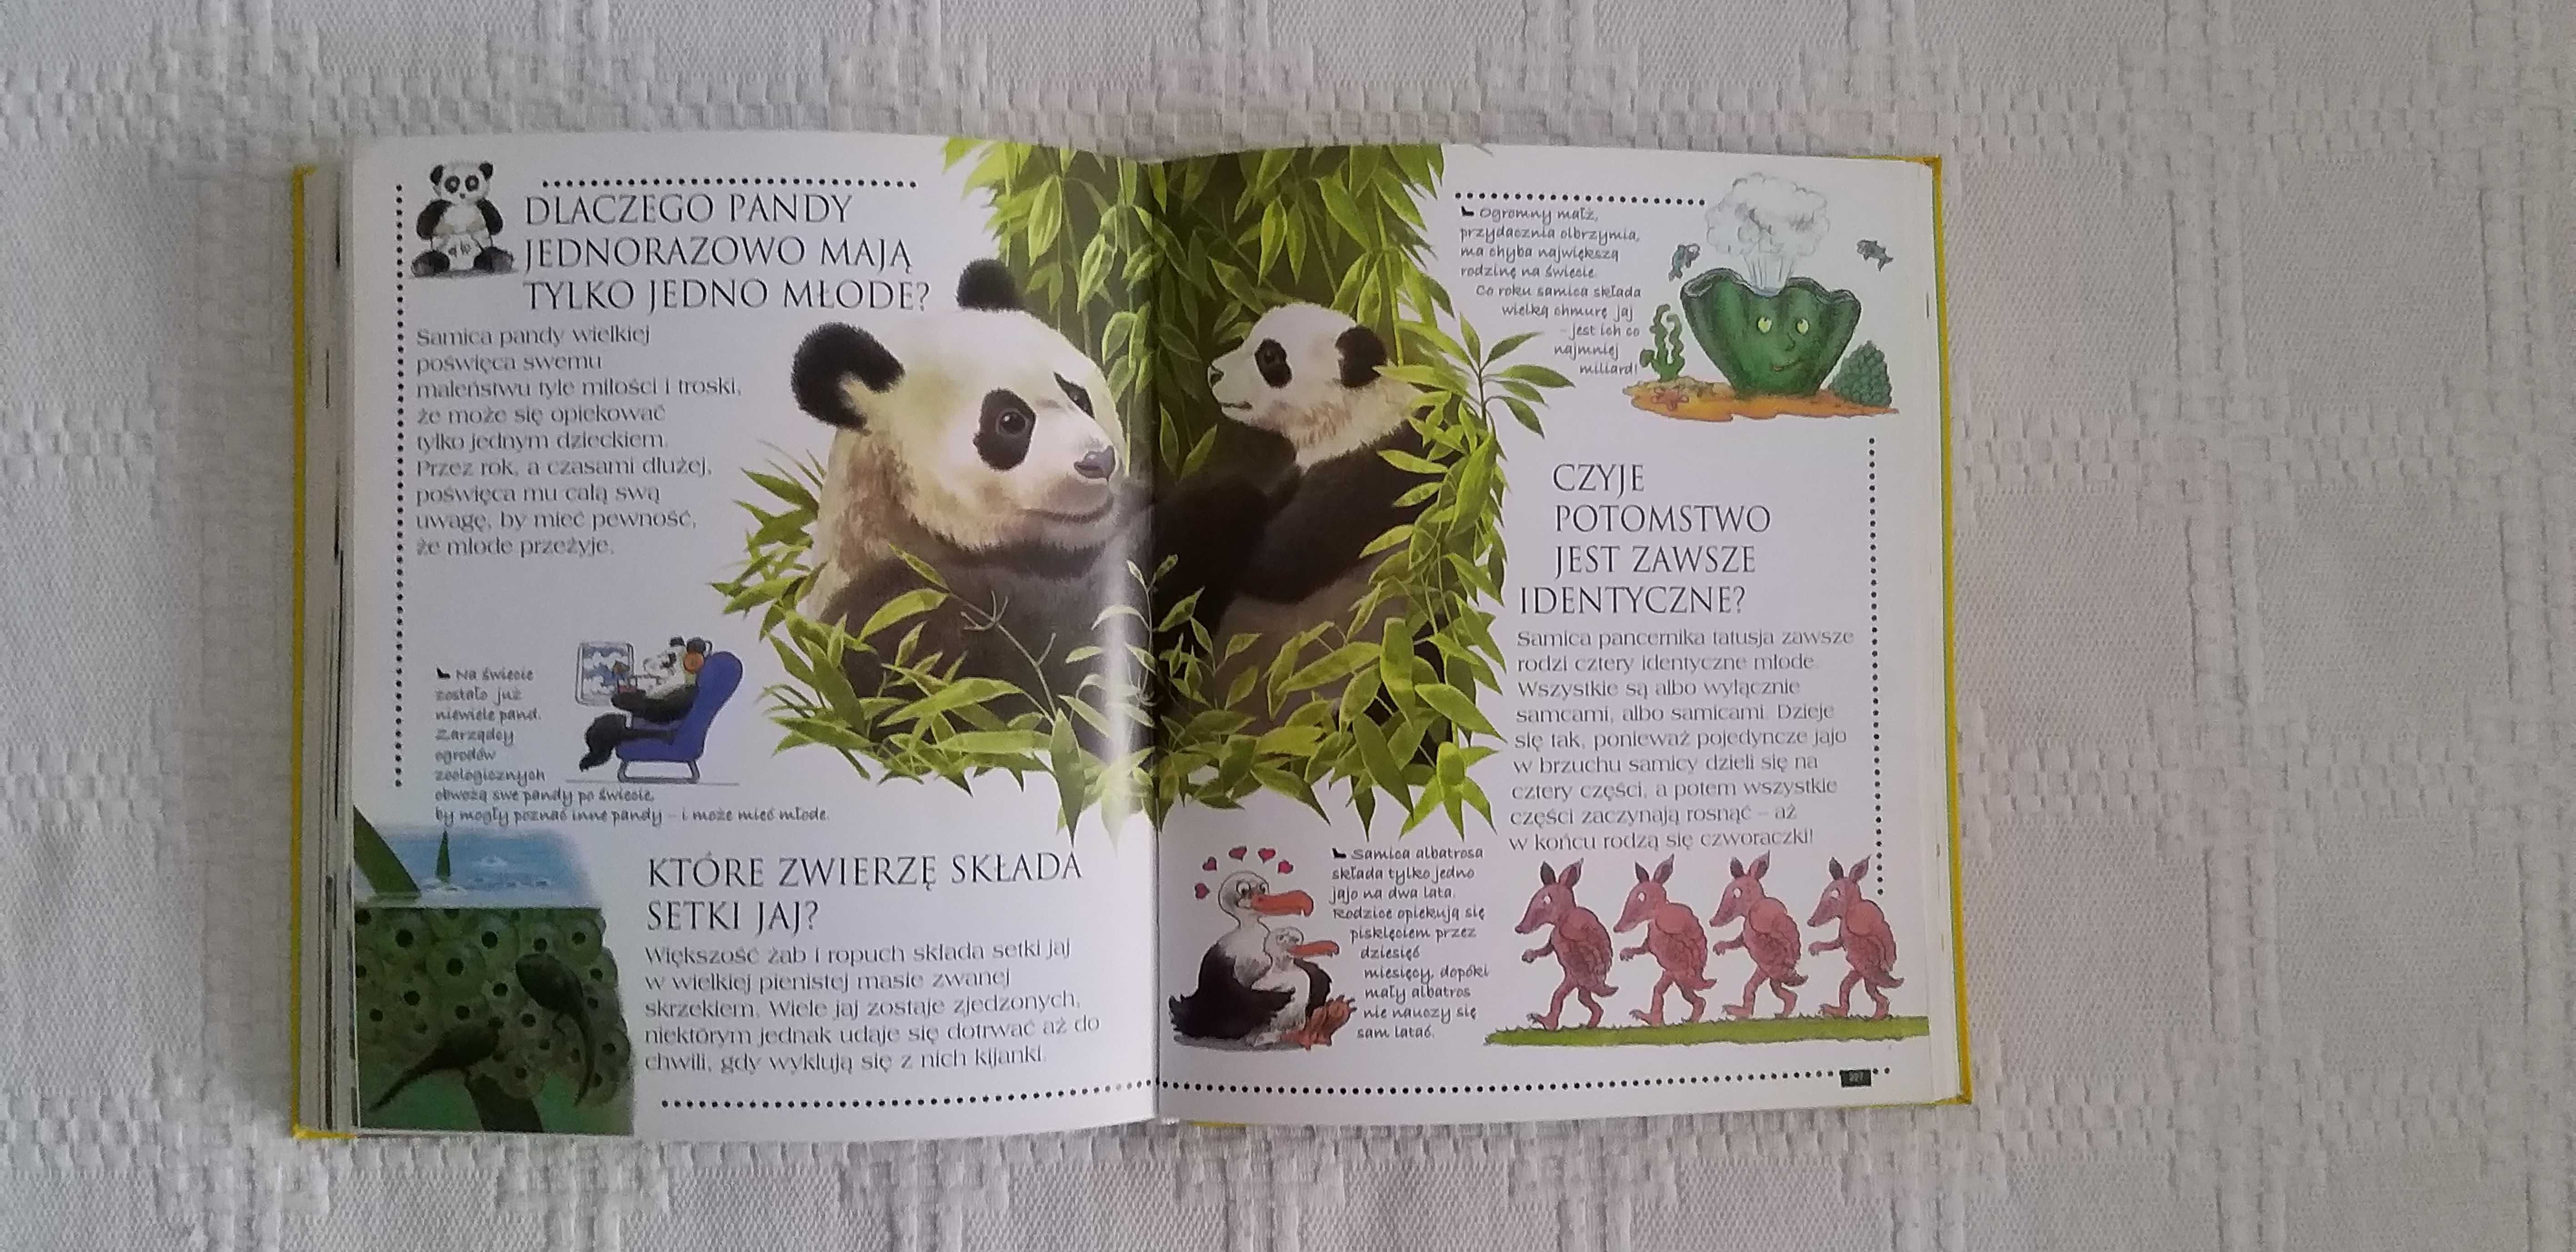 Księga zwierząt z serii Ciekawe dlaczego książka edukacyjna dla dzieci